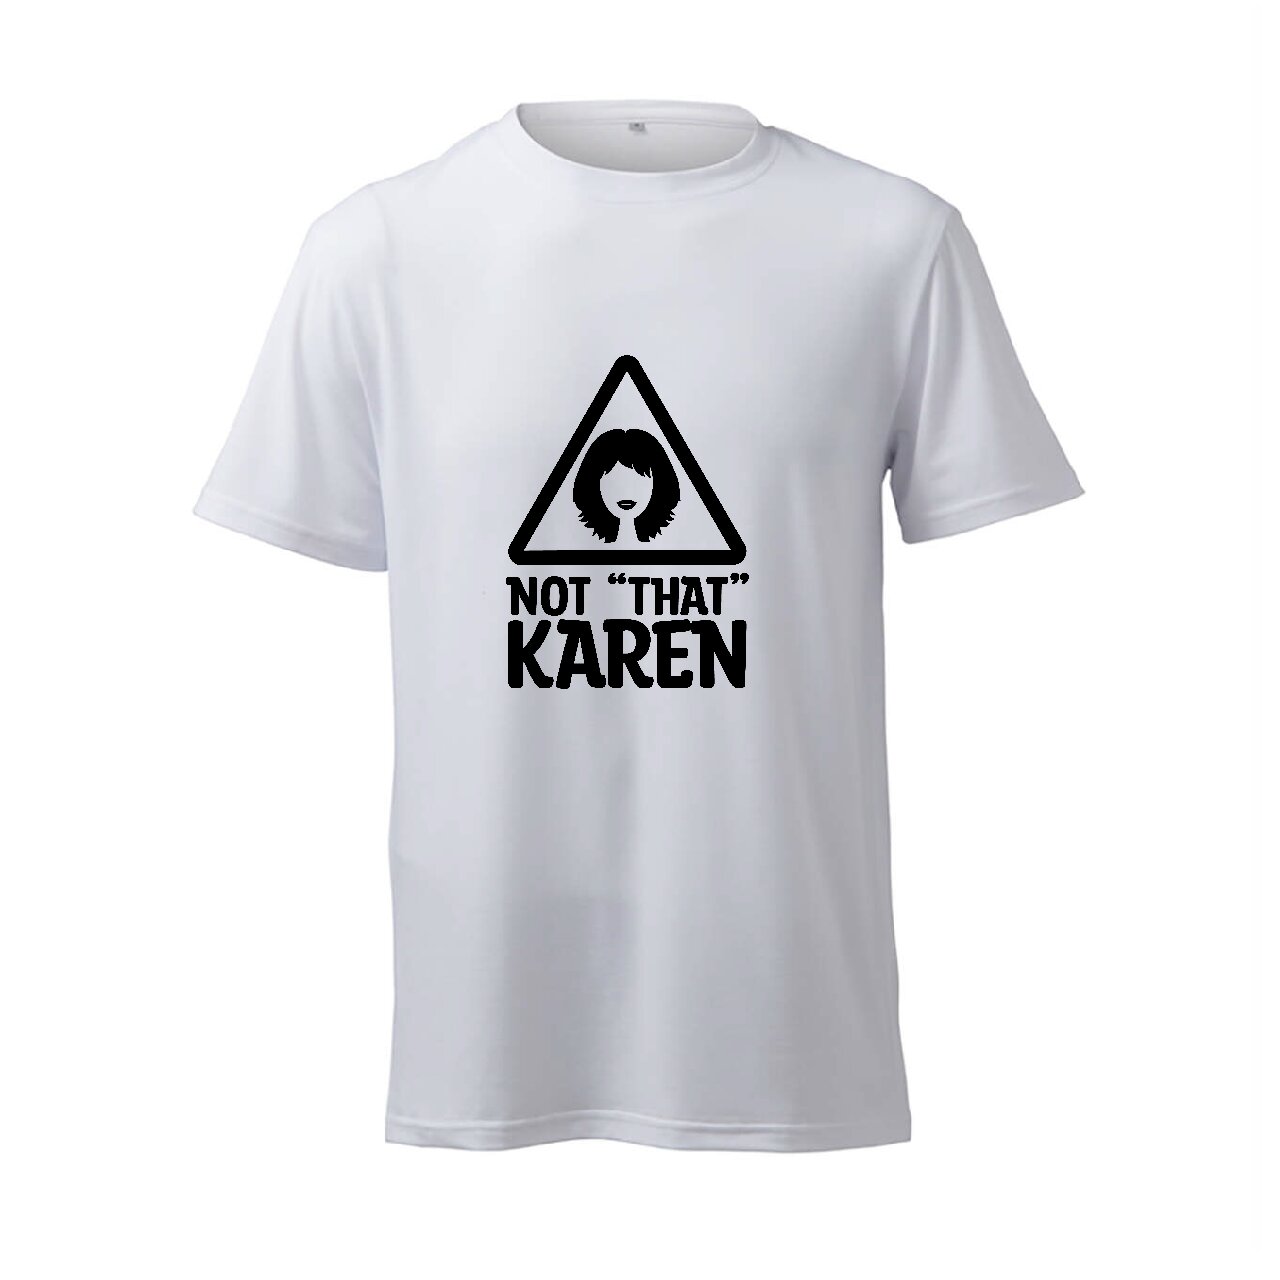 Not "That" Karen - T-Shirt